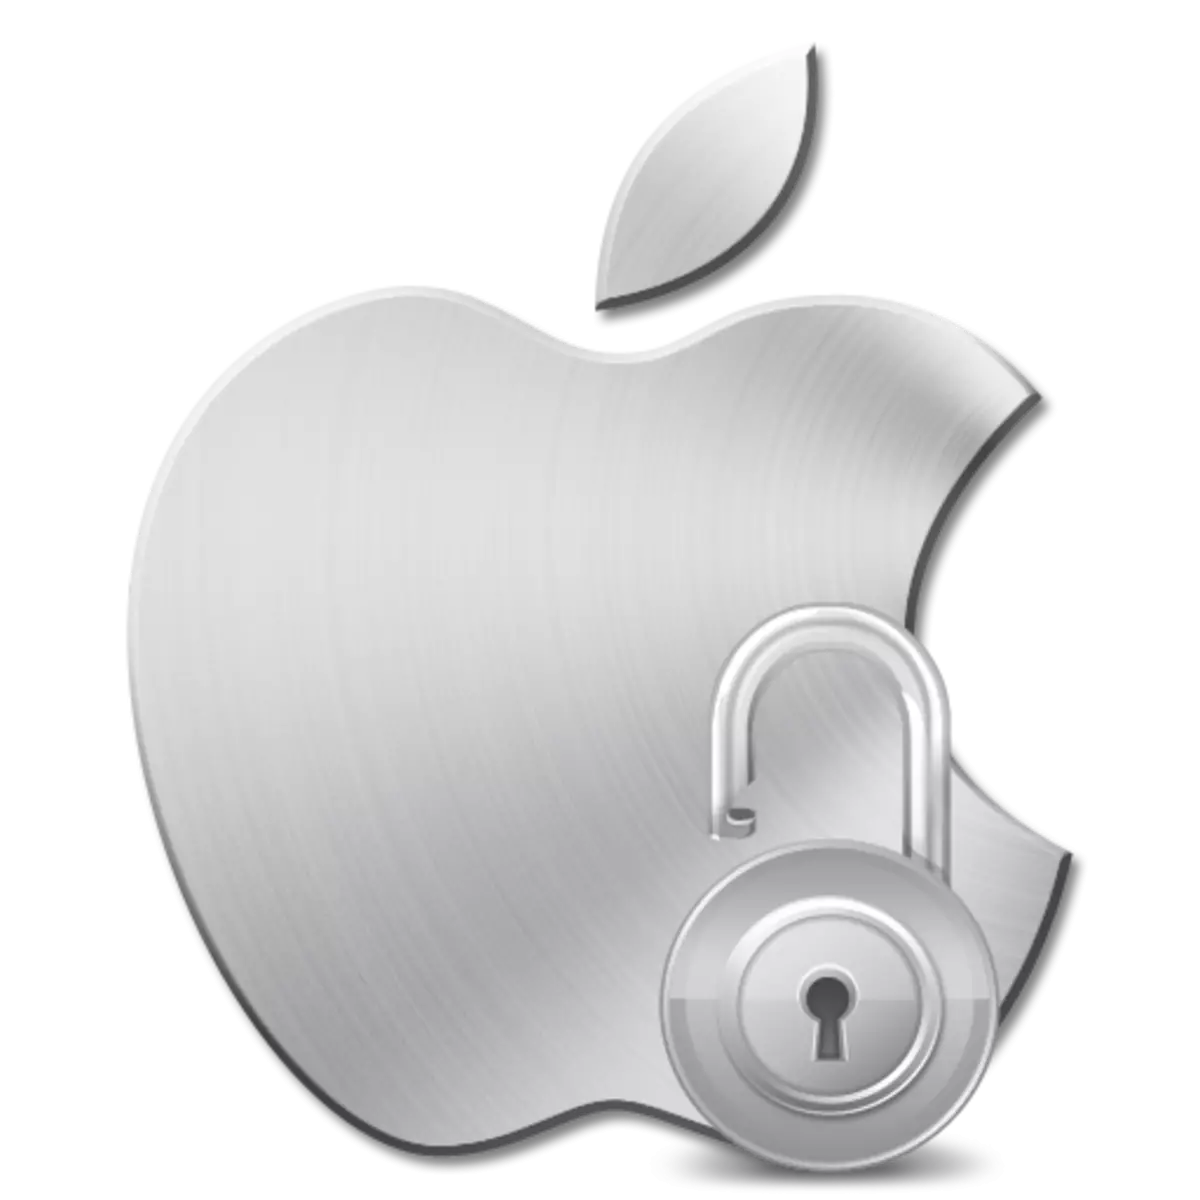 Apple ID bị chặn bởi lý do bảo mật: phải làm gì?